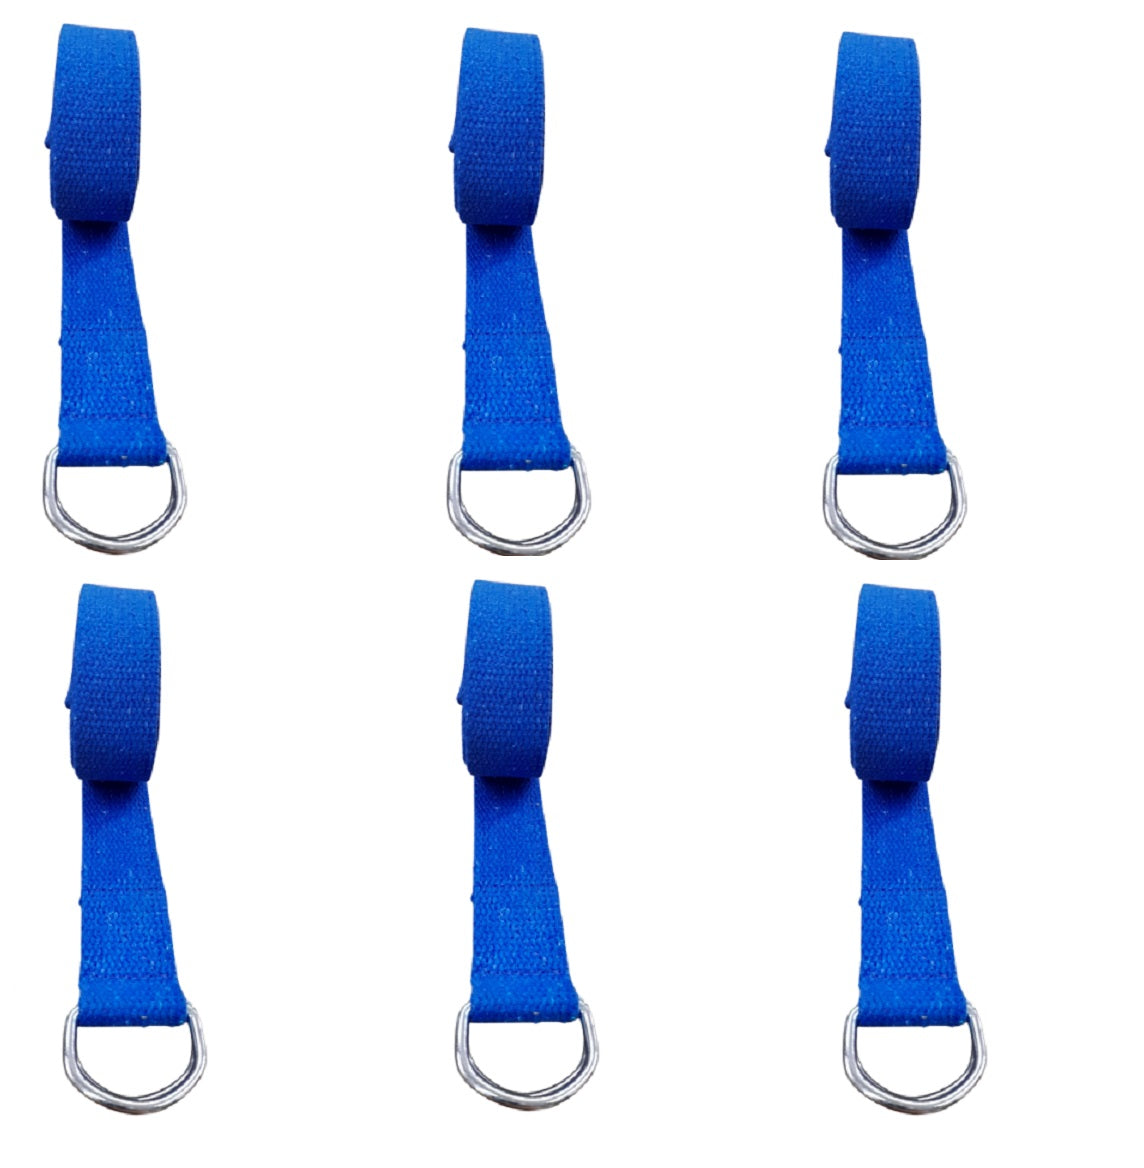 6 peças Yoga Strap - Cinto Para Alongamento - Cor Azul Royal